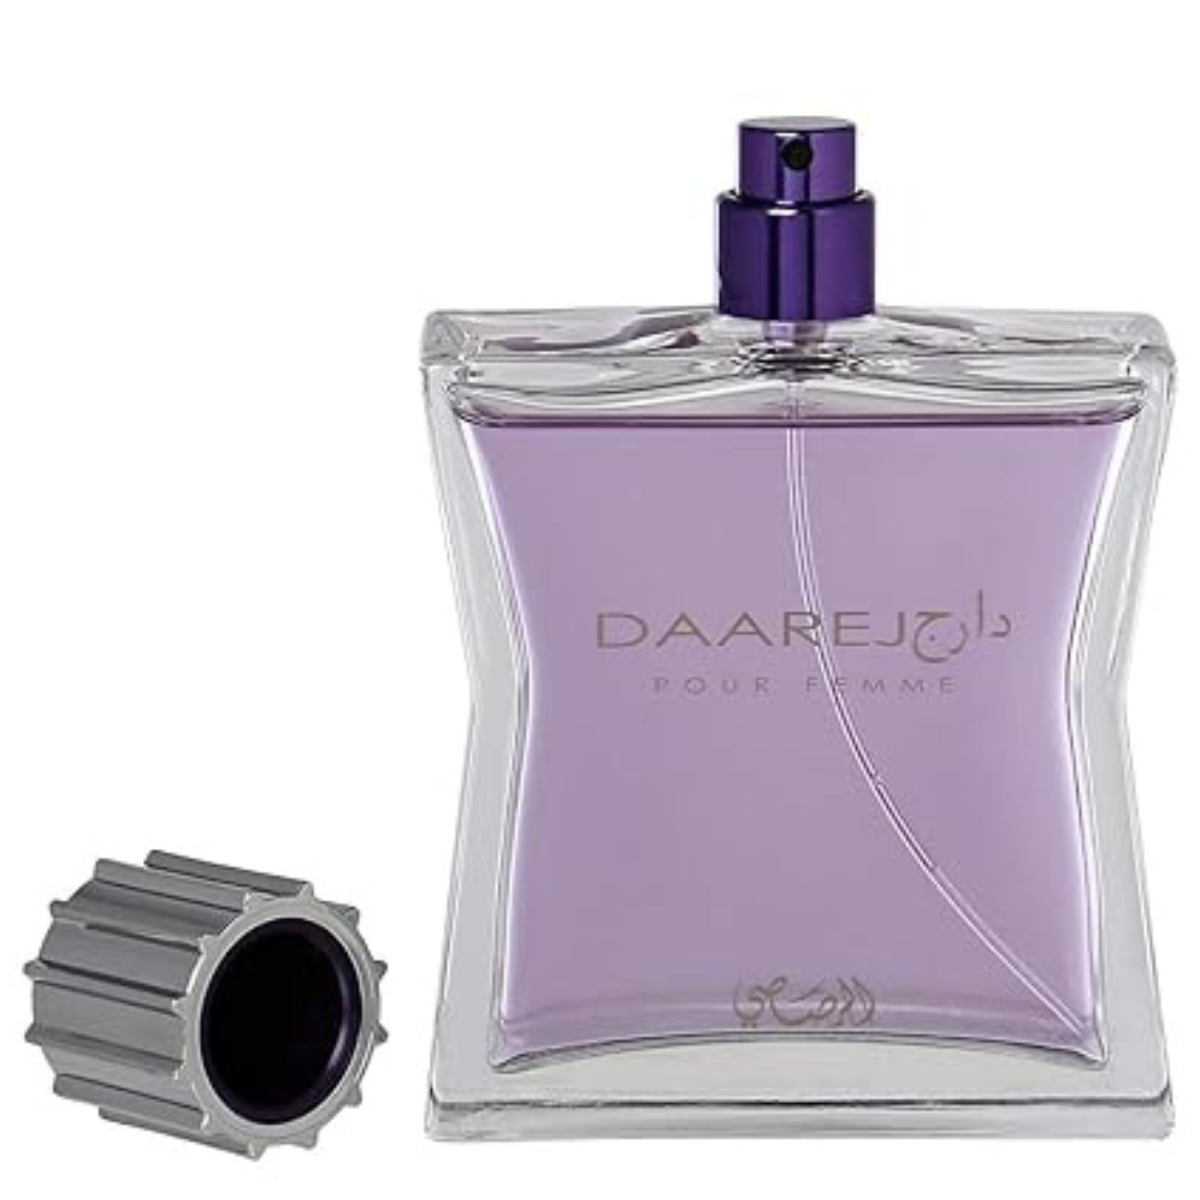 Rasasi Dareej Pour Femme 100 ml EDP for women perfume